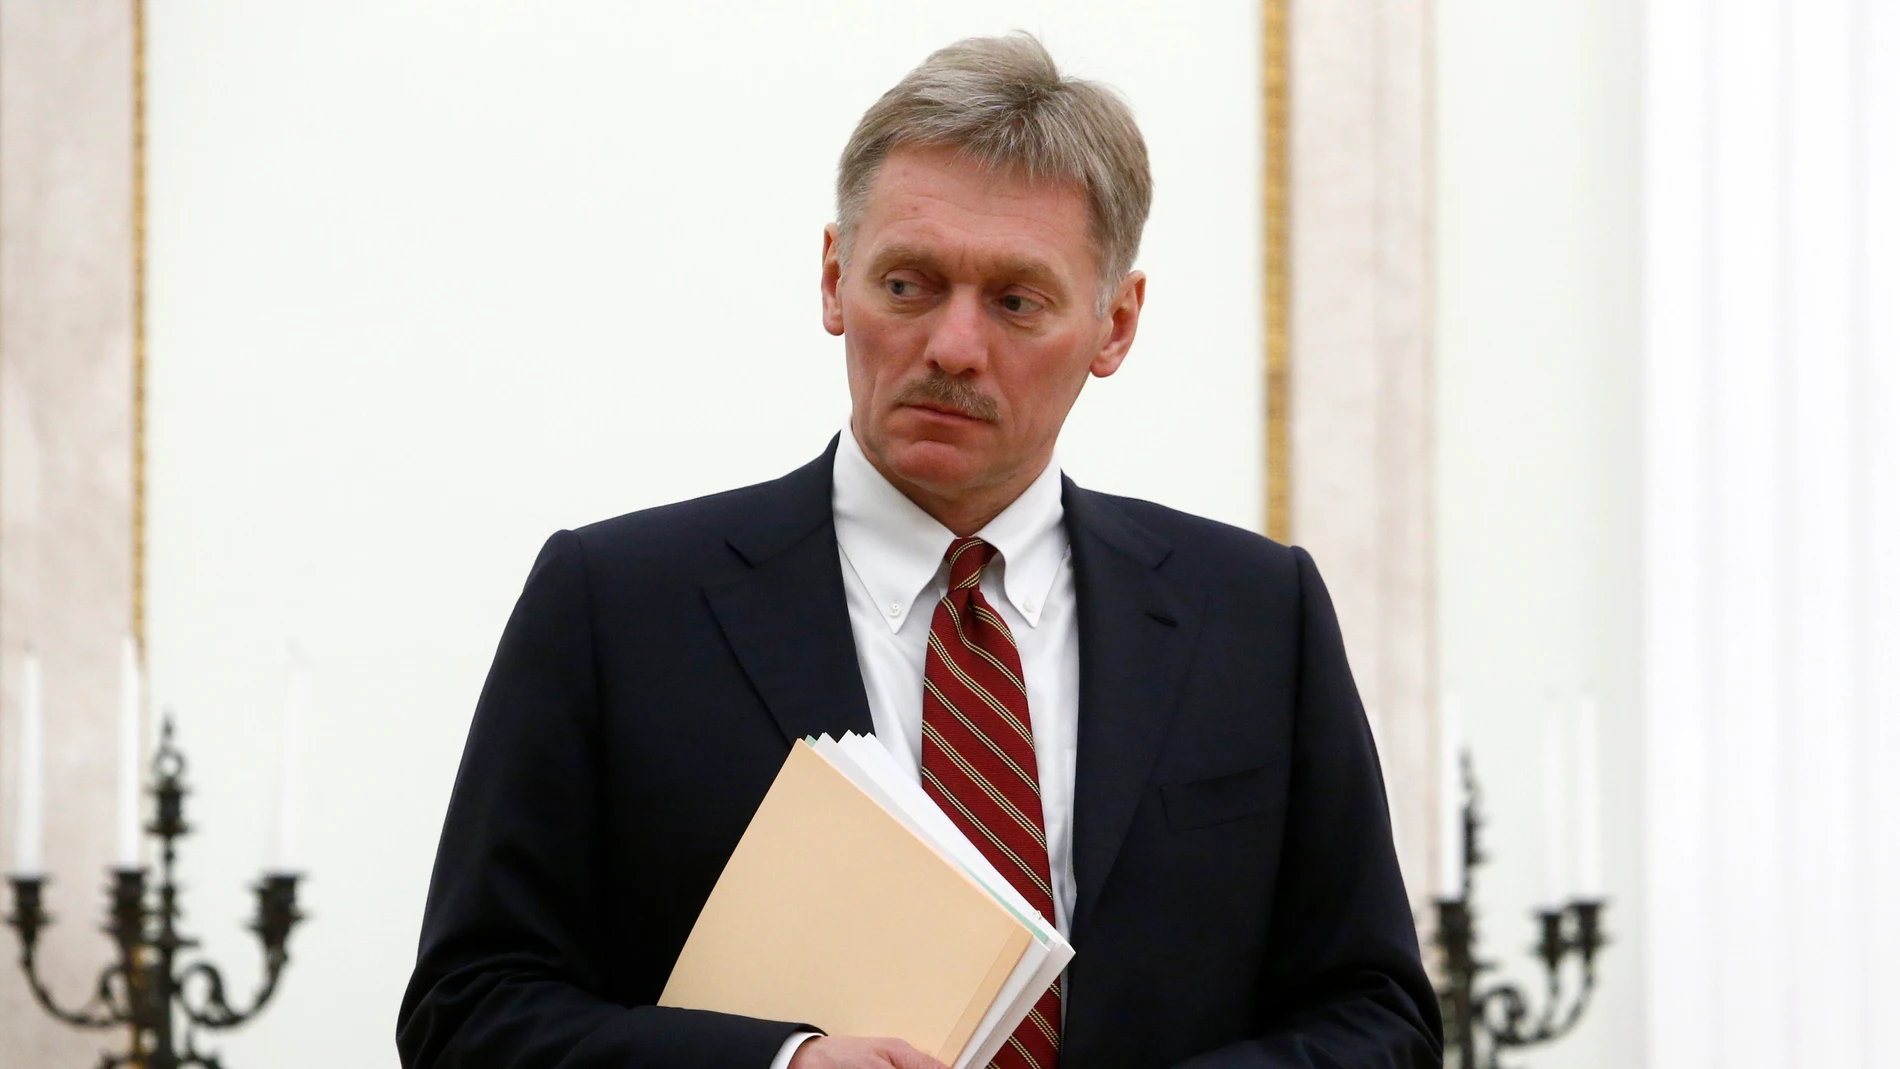 El portavoz de la Presidencia, Dmitri Peskov, en una fotografía de archivo